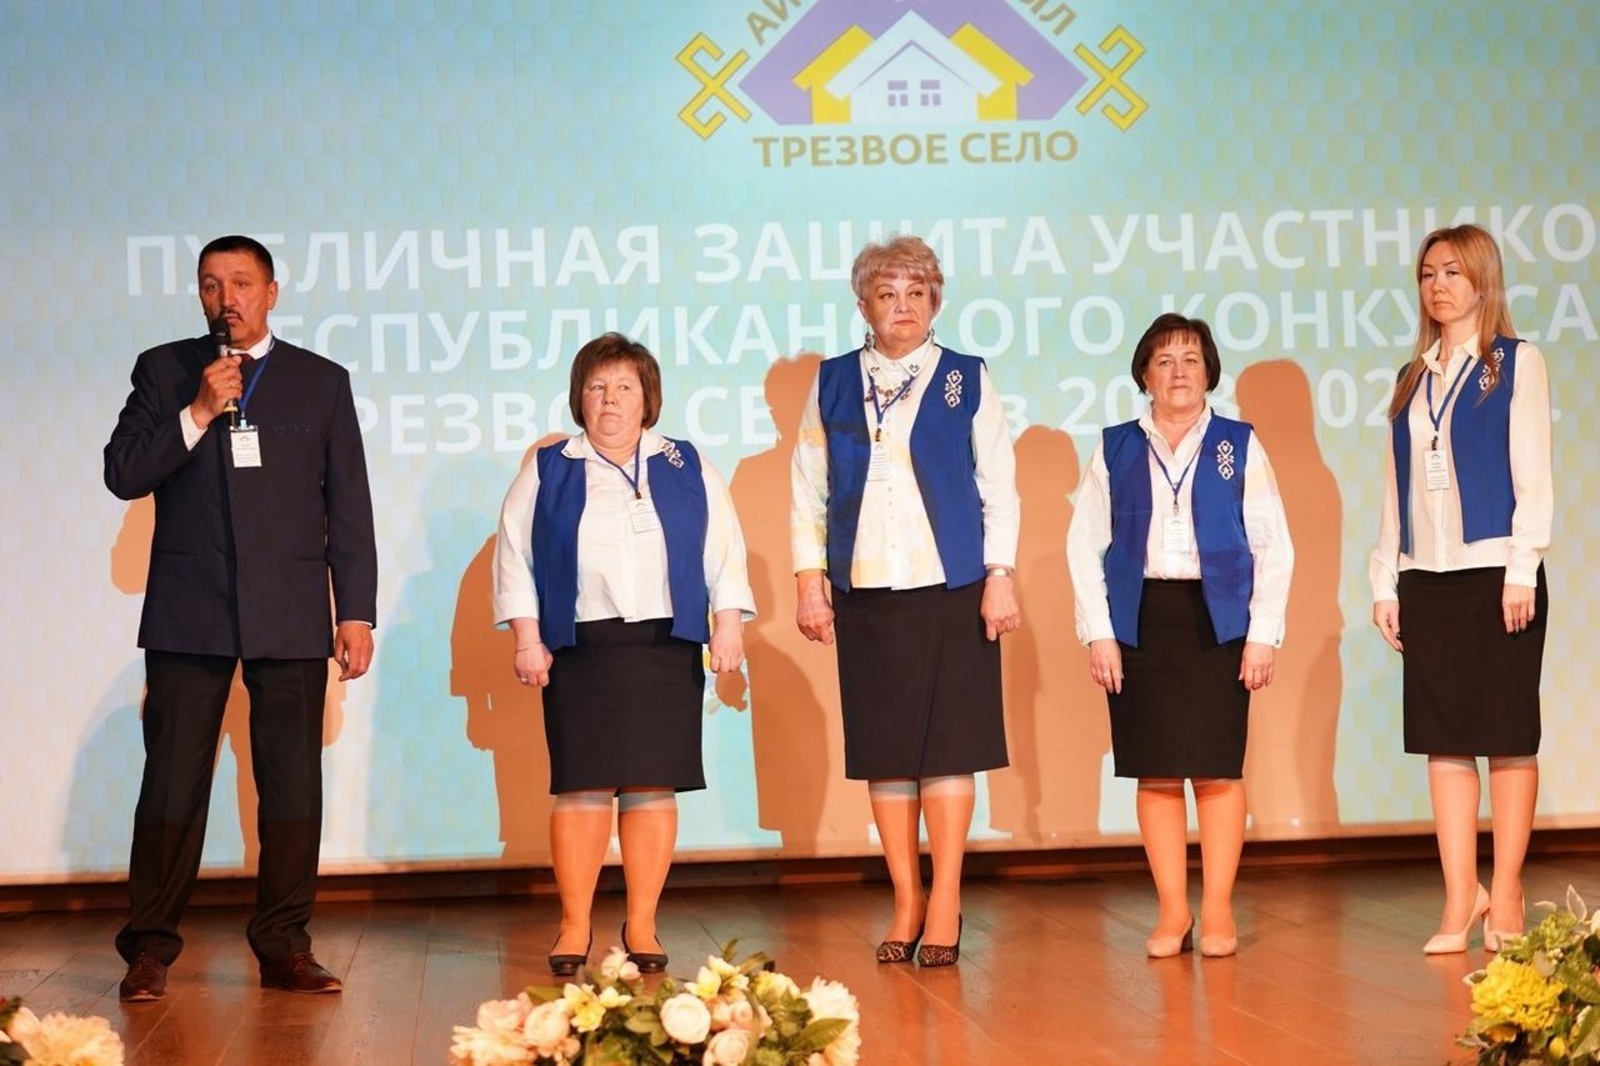 В Башкирии стали известны победители республиканского конкурса "Трезвое село"